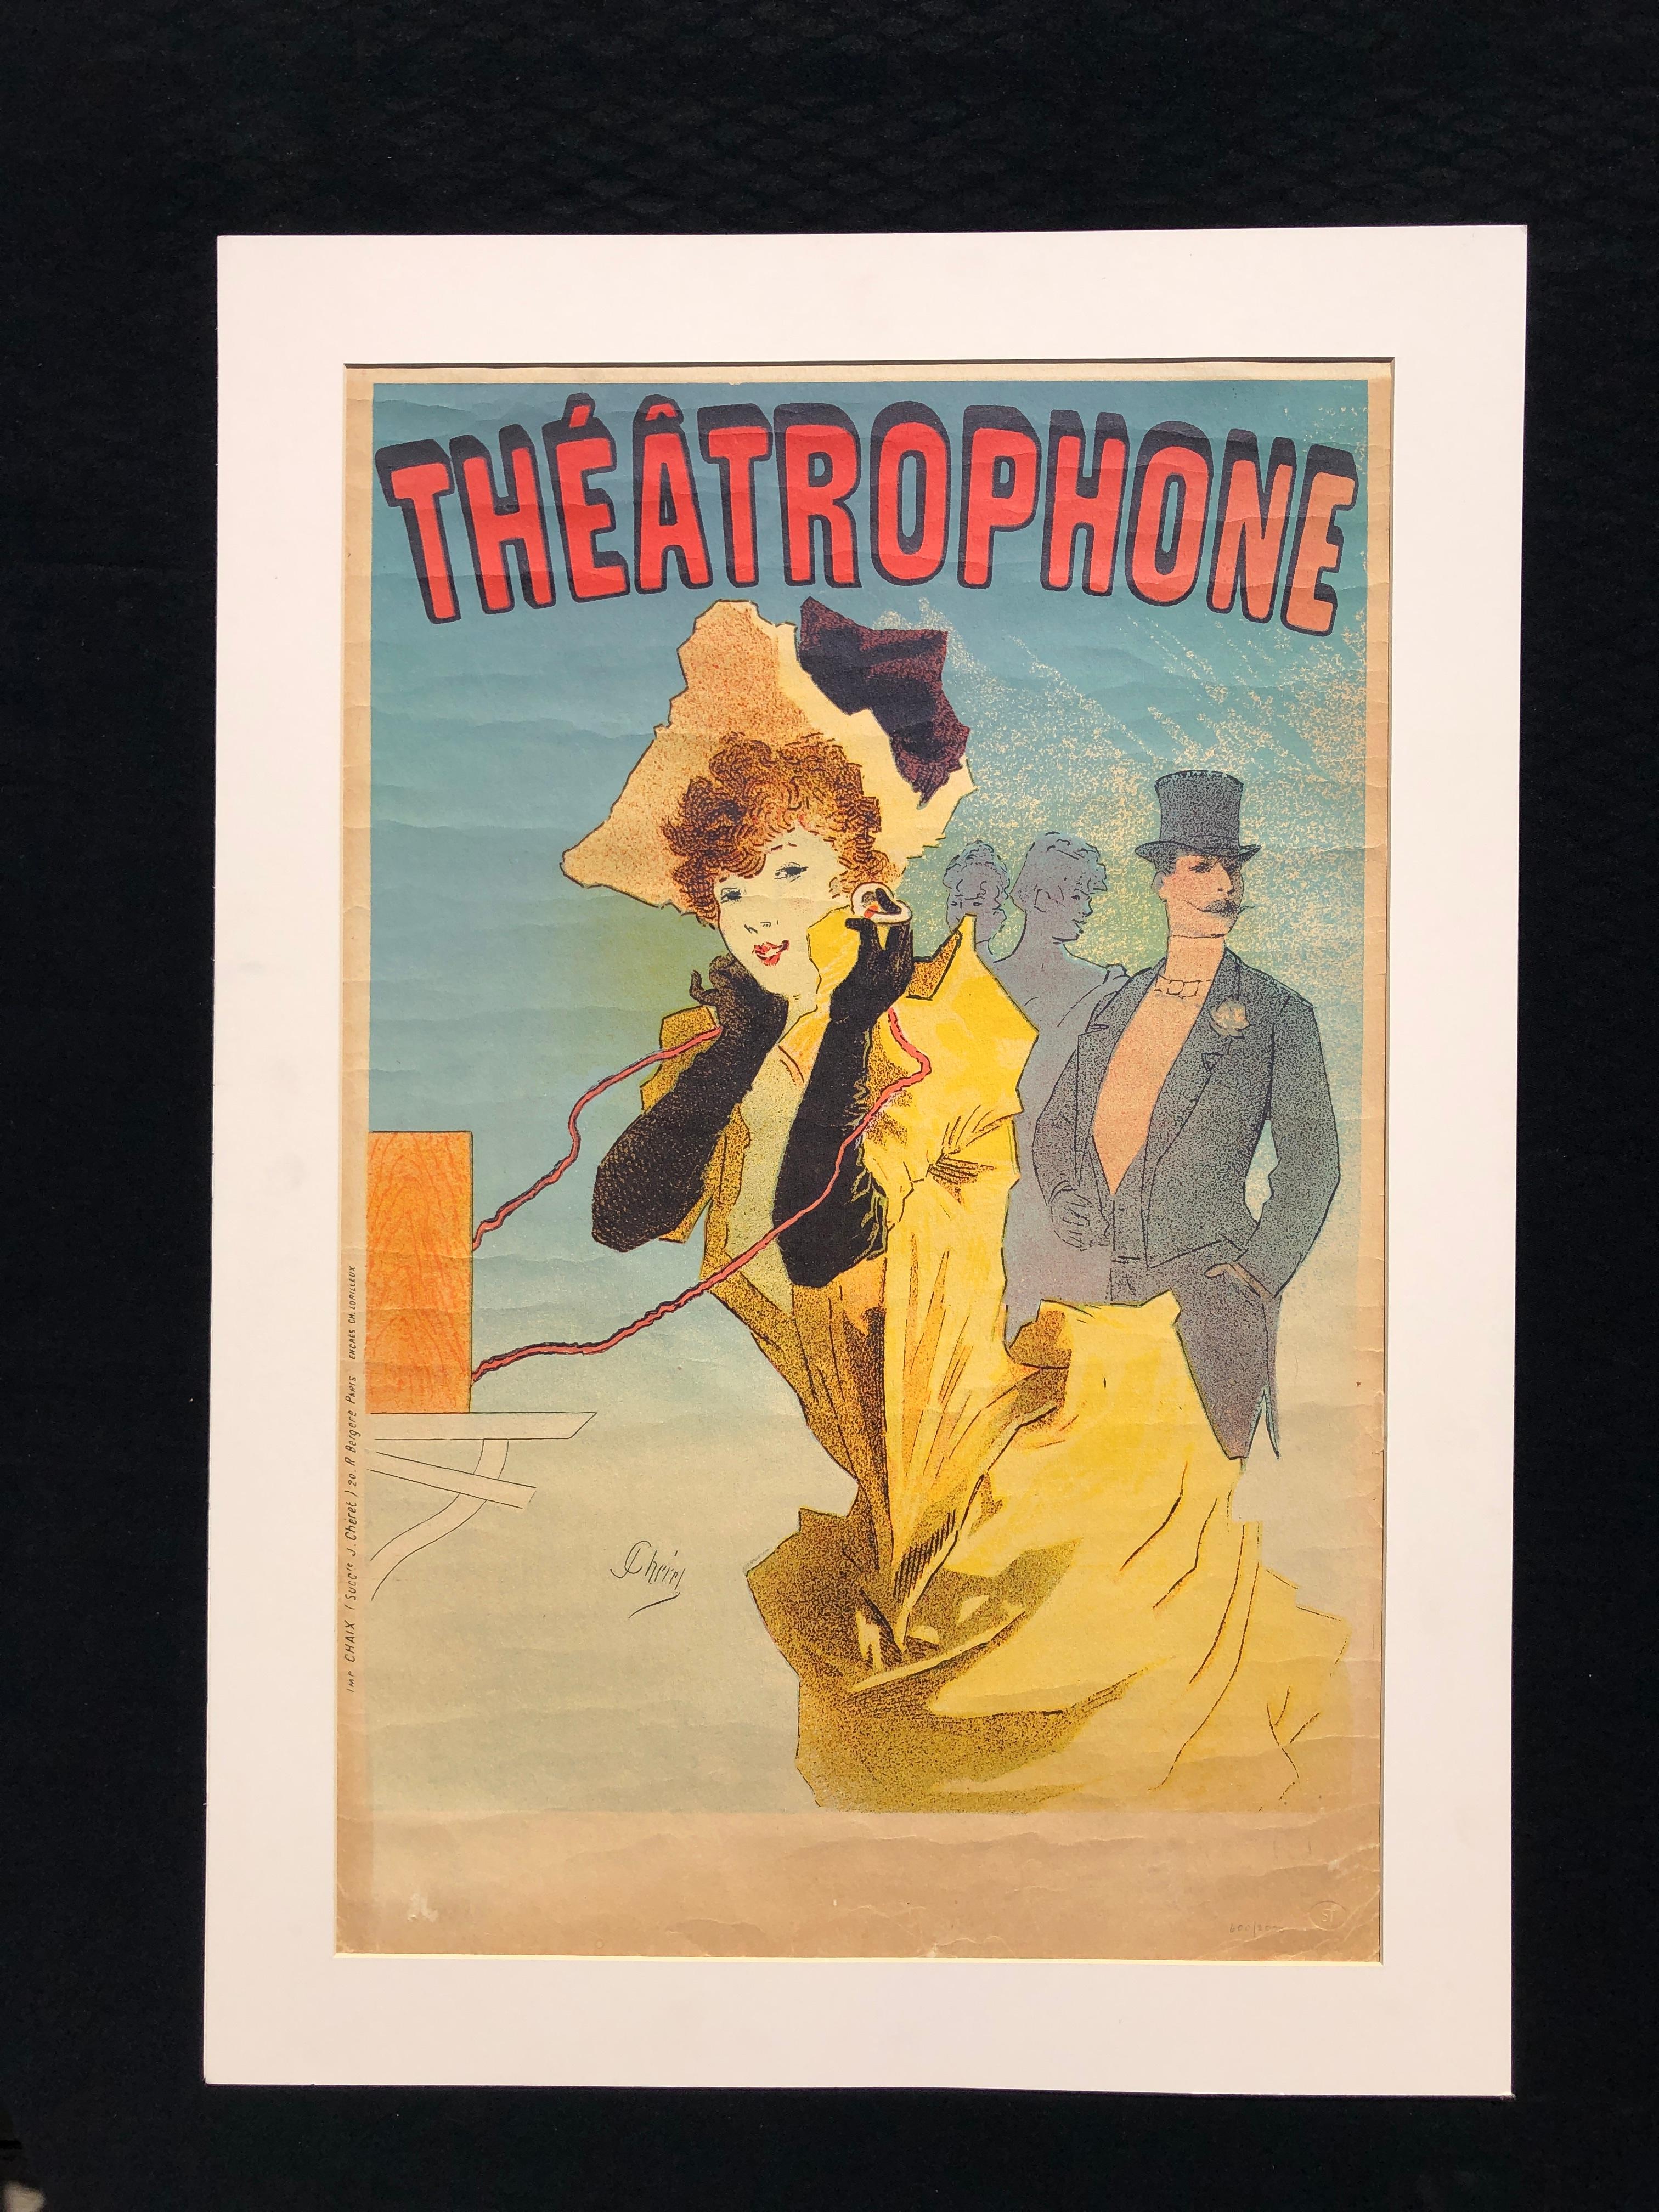 French Le Théâtrophone - Vintage Art Nouveau Lithograph Poster by Jules Cheret For Sale